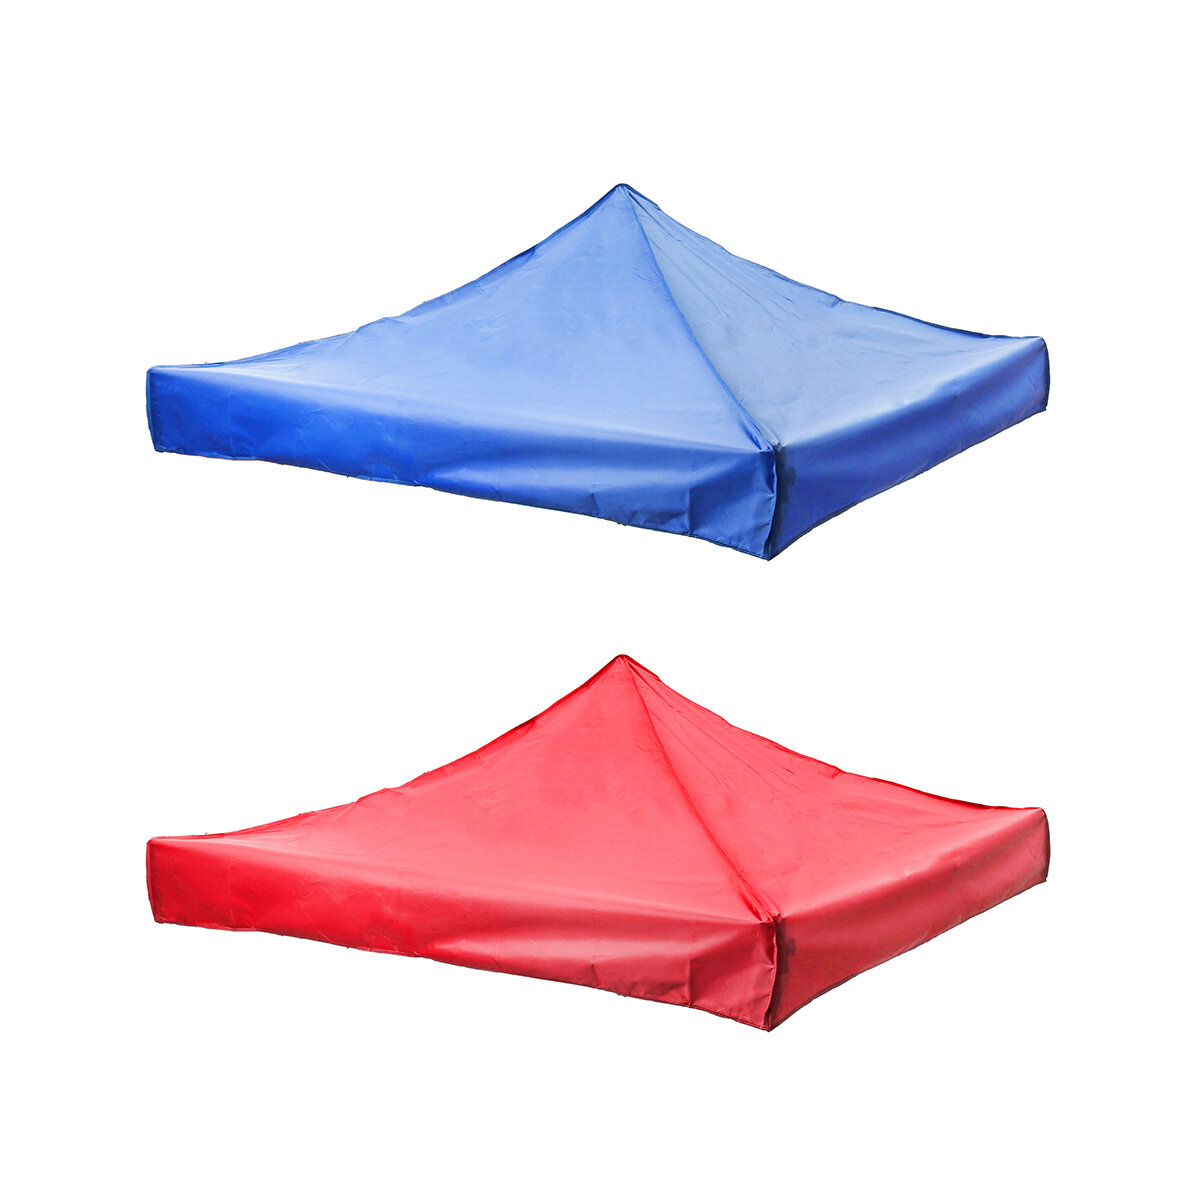 Ersatz-Top-Abdeckung für 3x4,5m Outdoor-Zelt-Canopy-Herstellerwerbung Faltbare Ausstellungszelt-Regenschirm-Top-Abdeckung